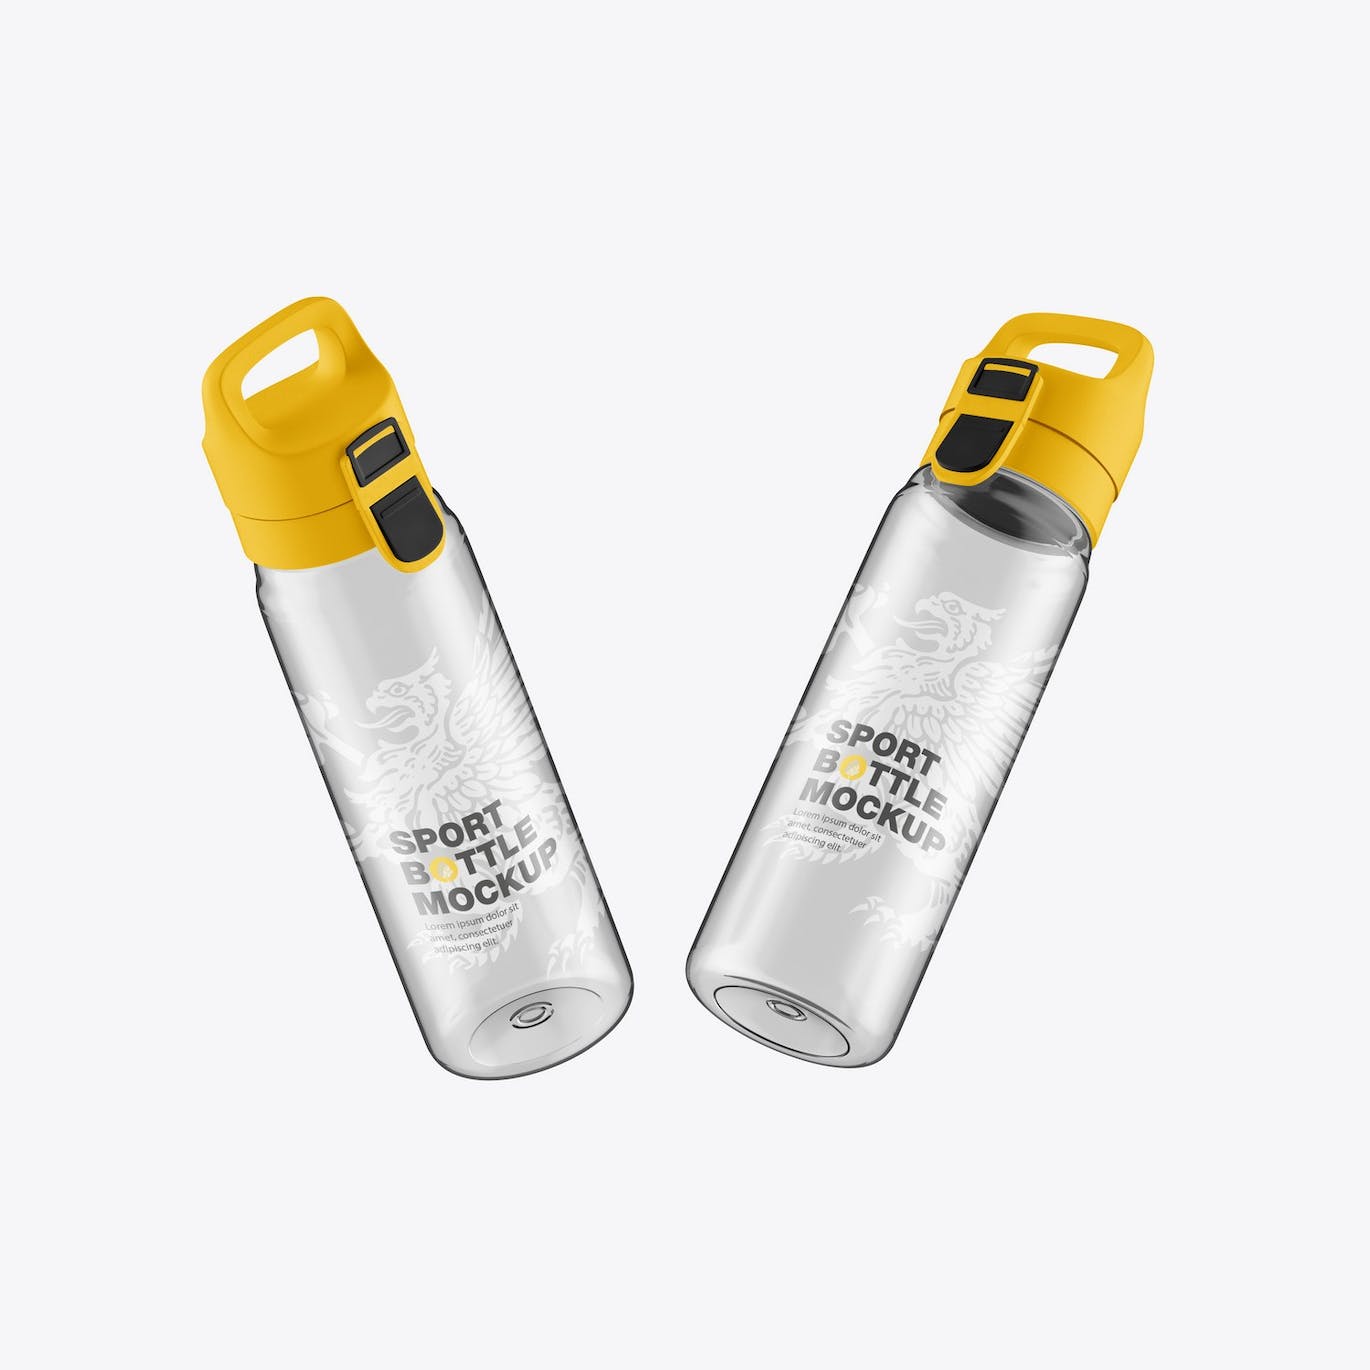 透明塑料运动水瓶设计样机 Sport Bottle Mockup 样机素材 第3张